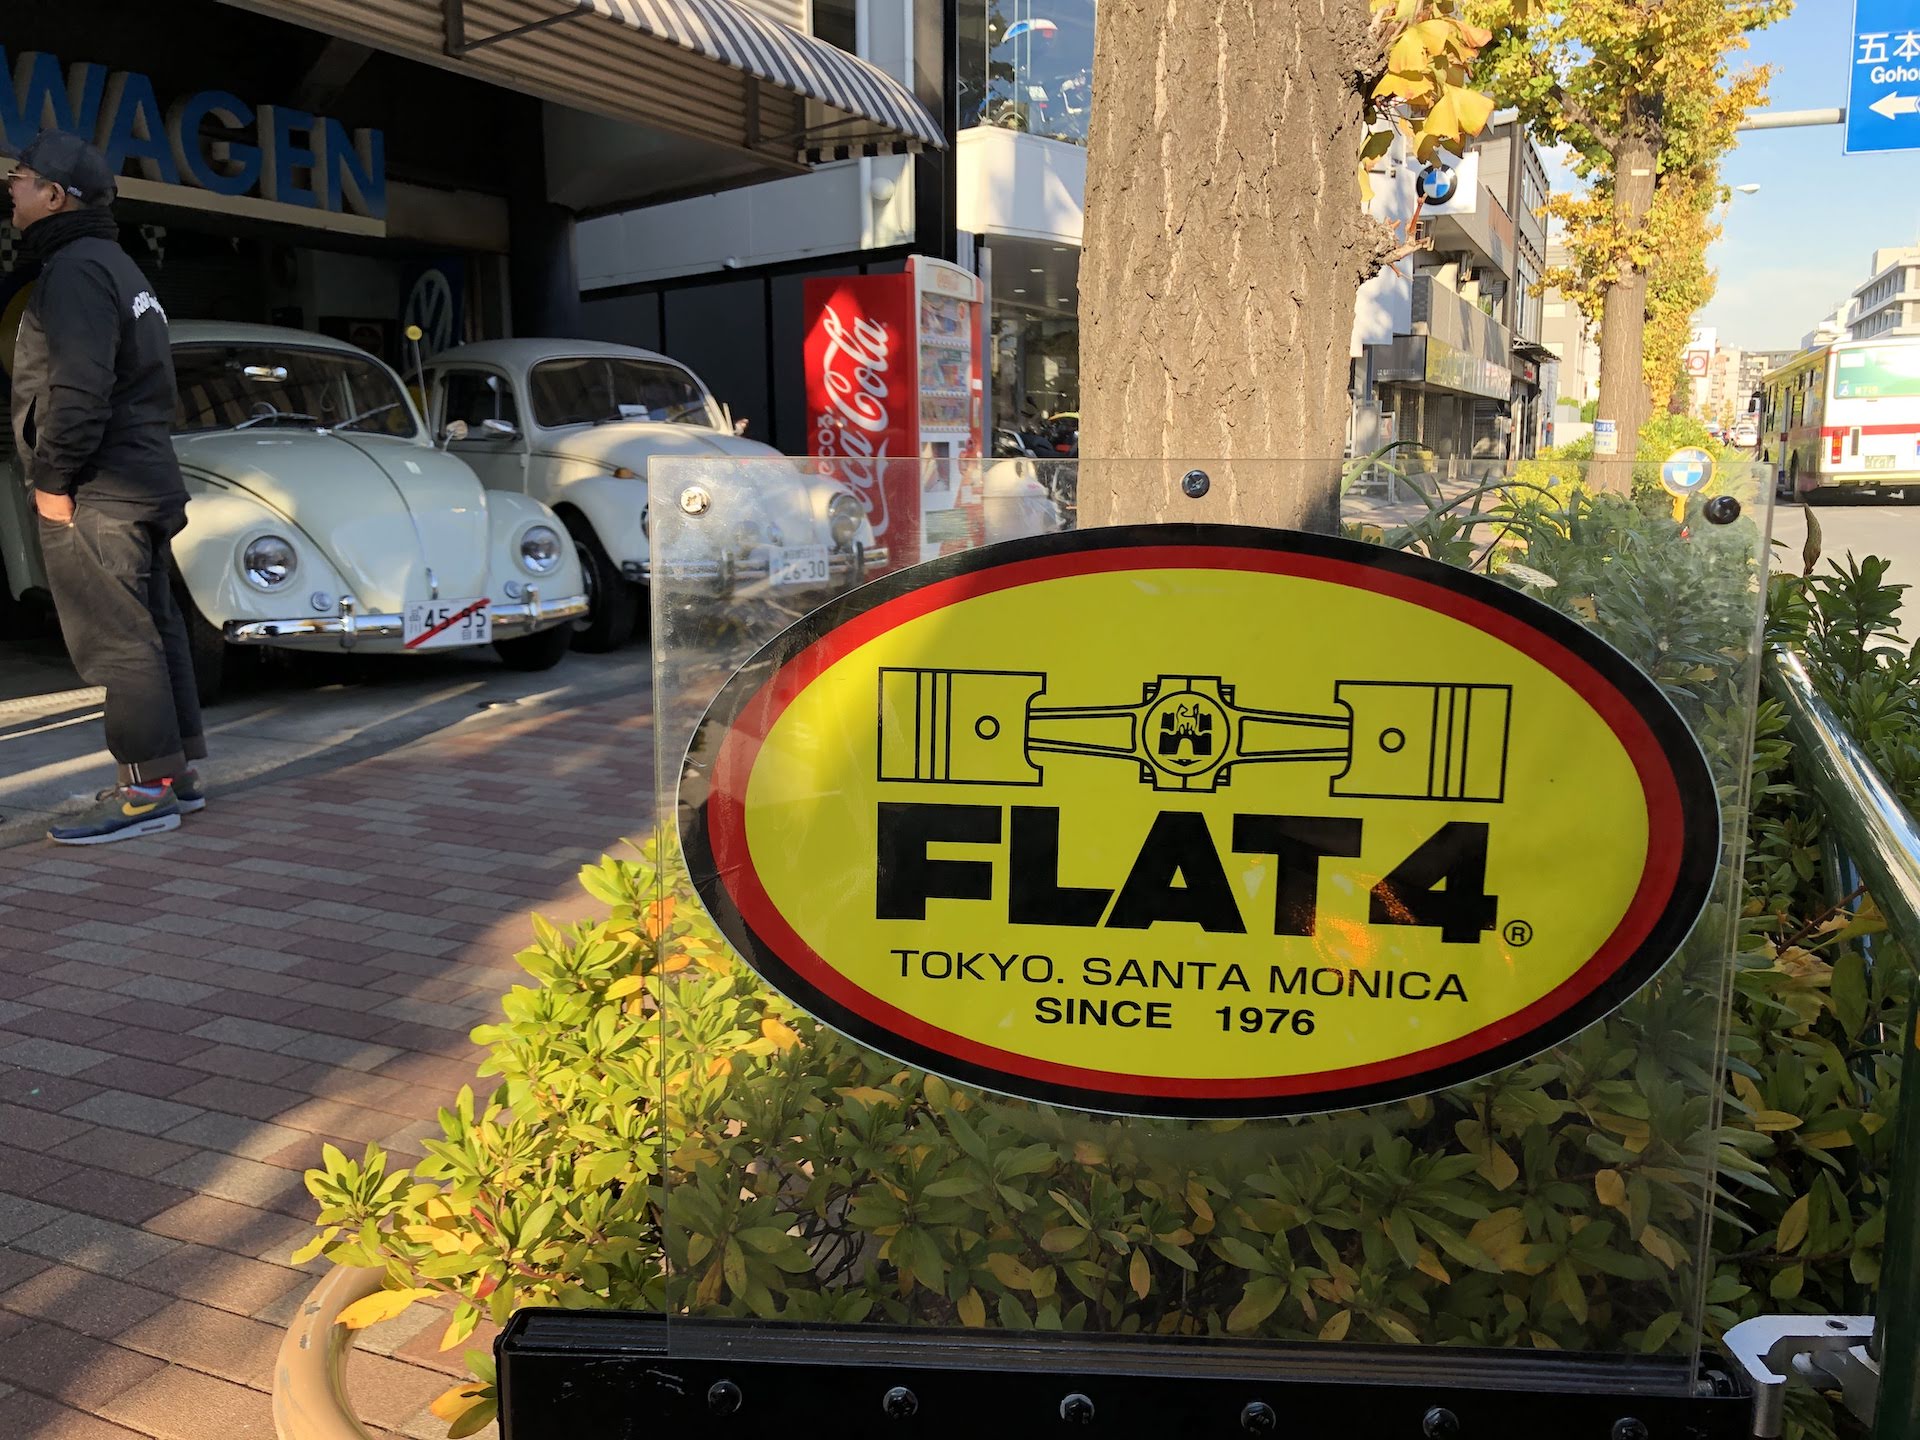 Flat-4 air-cooled VW